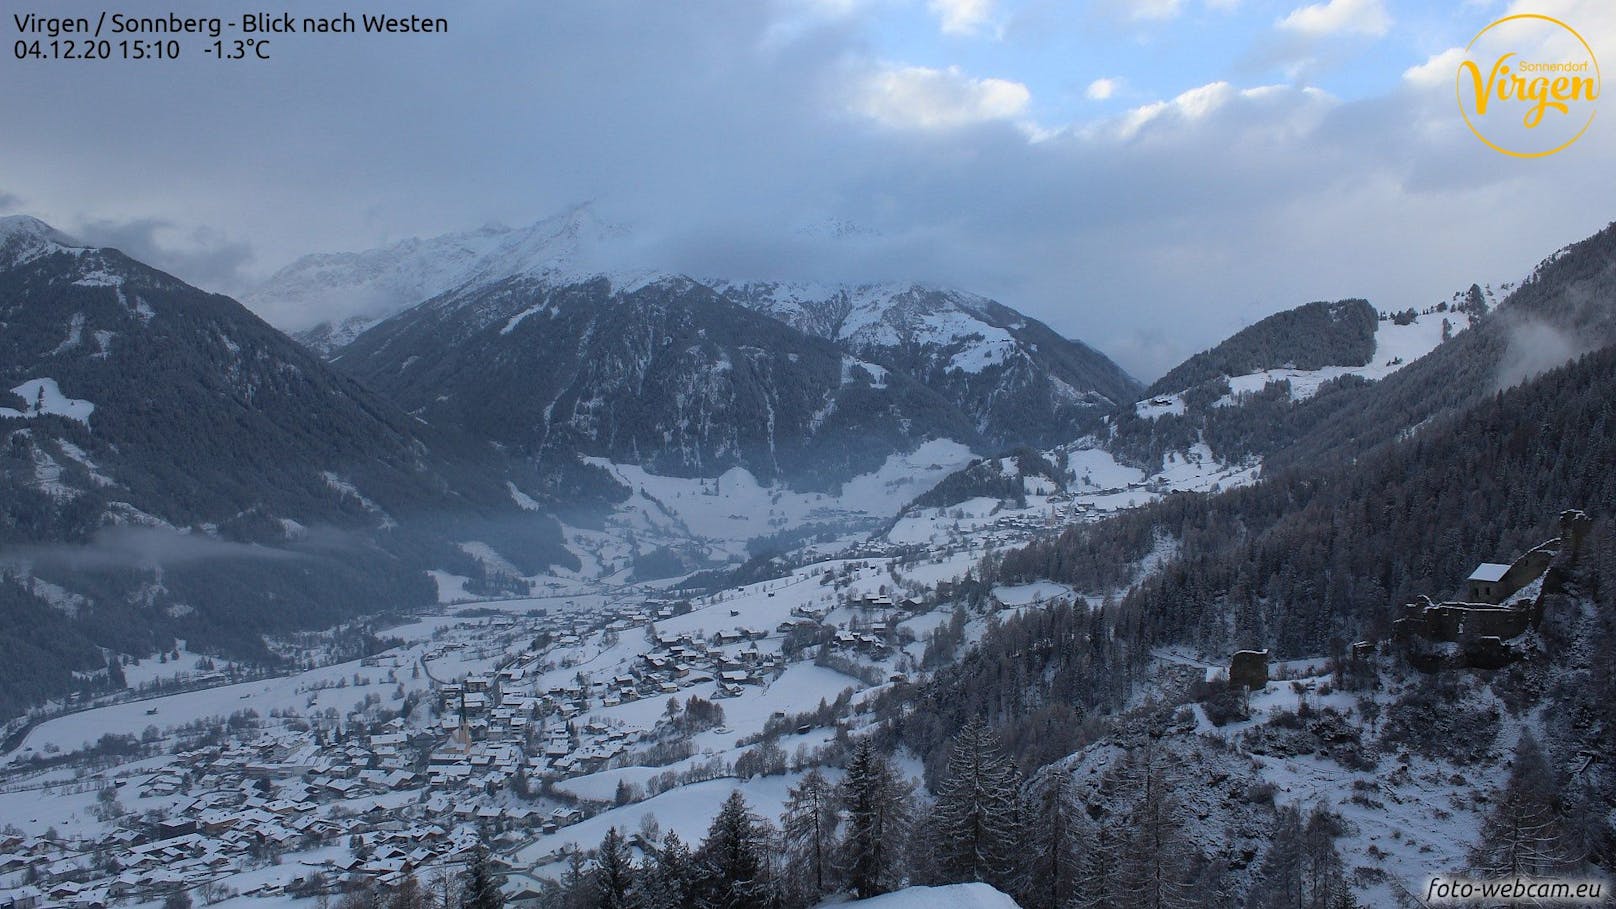 Schneesituation in Osttirol am 4. Dezember 2020